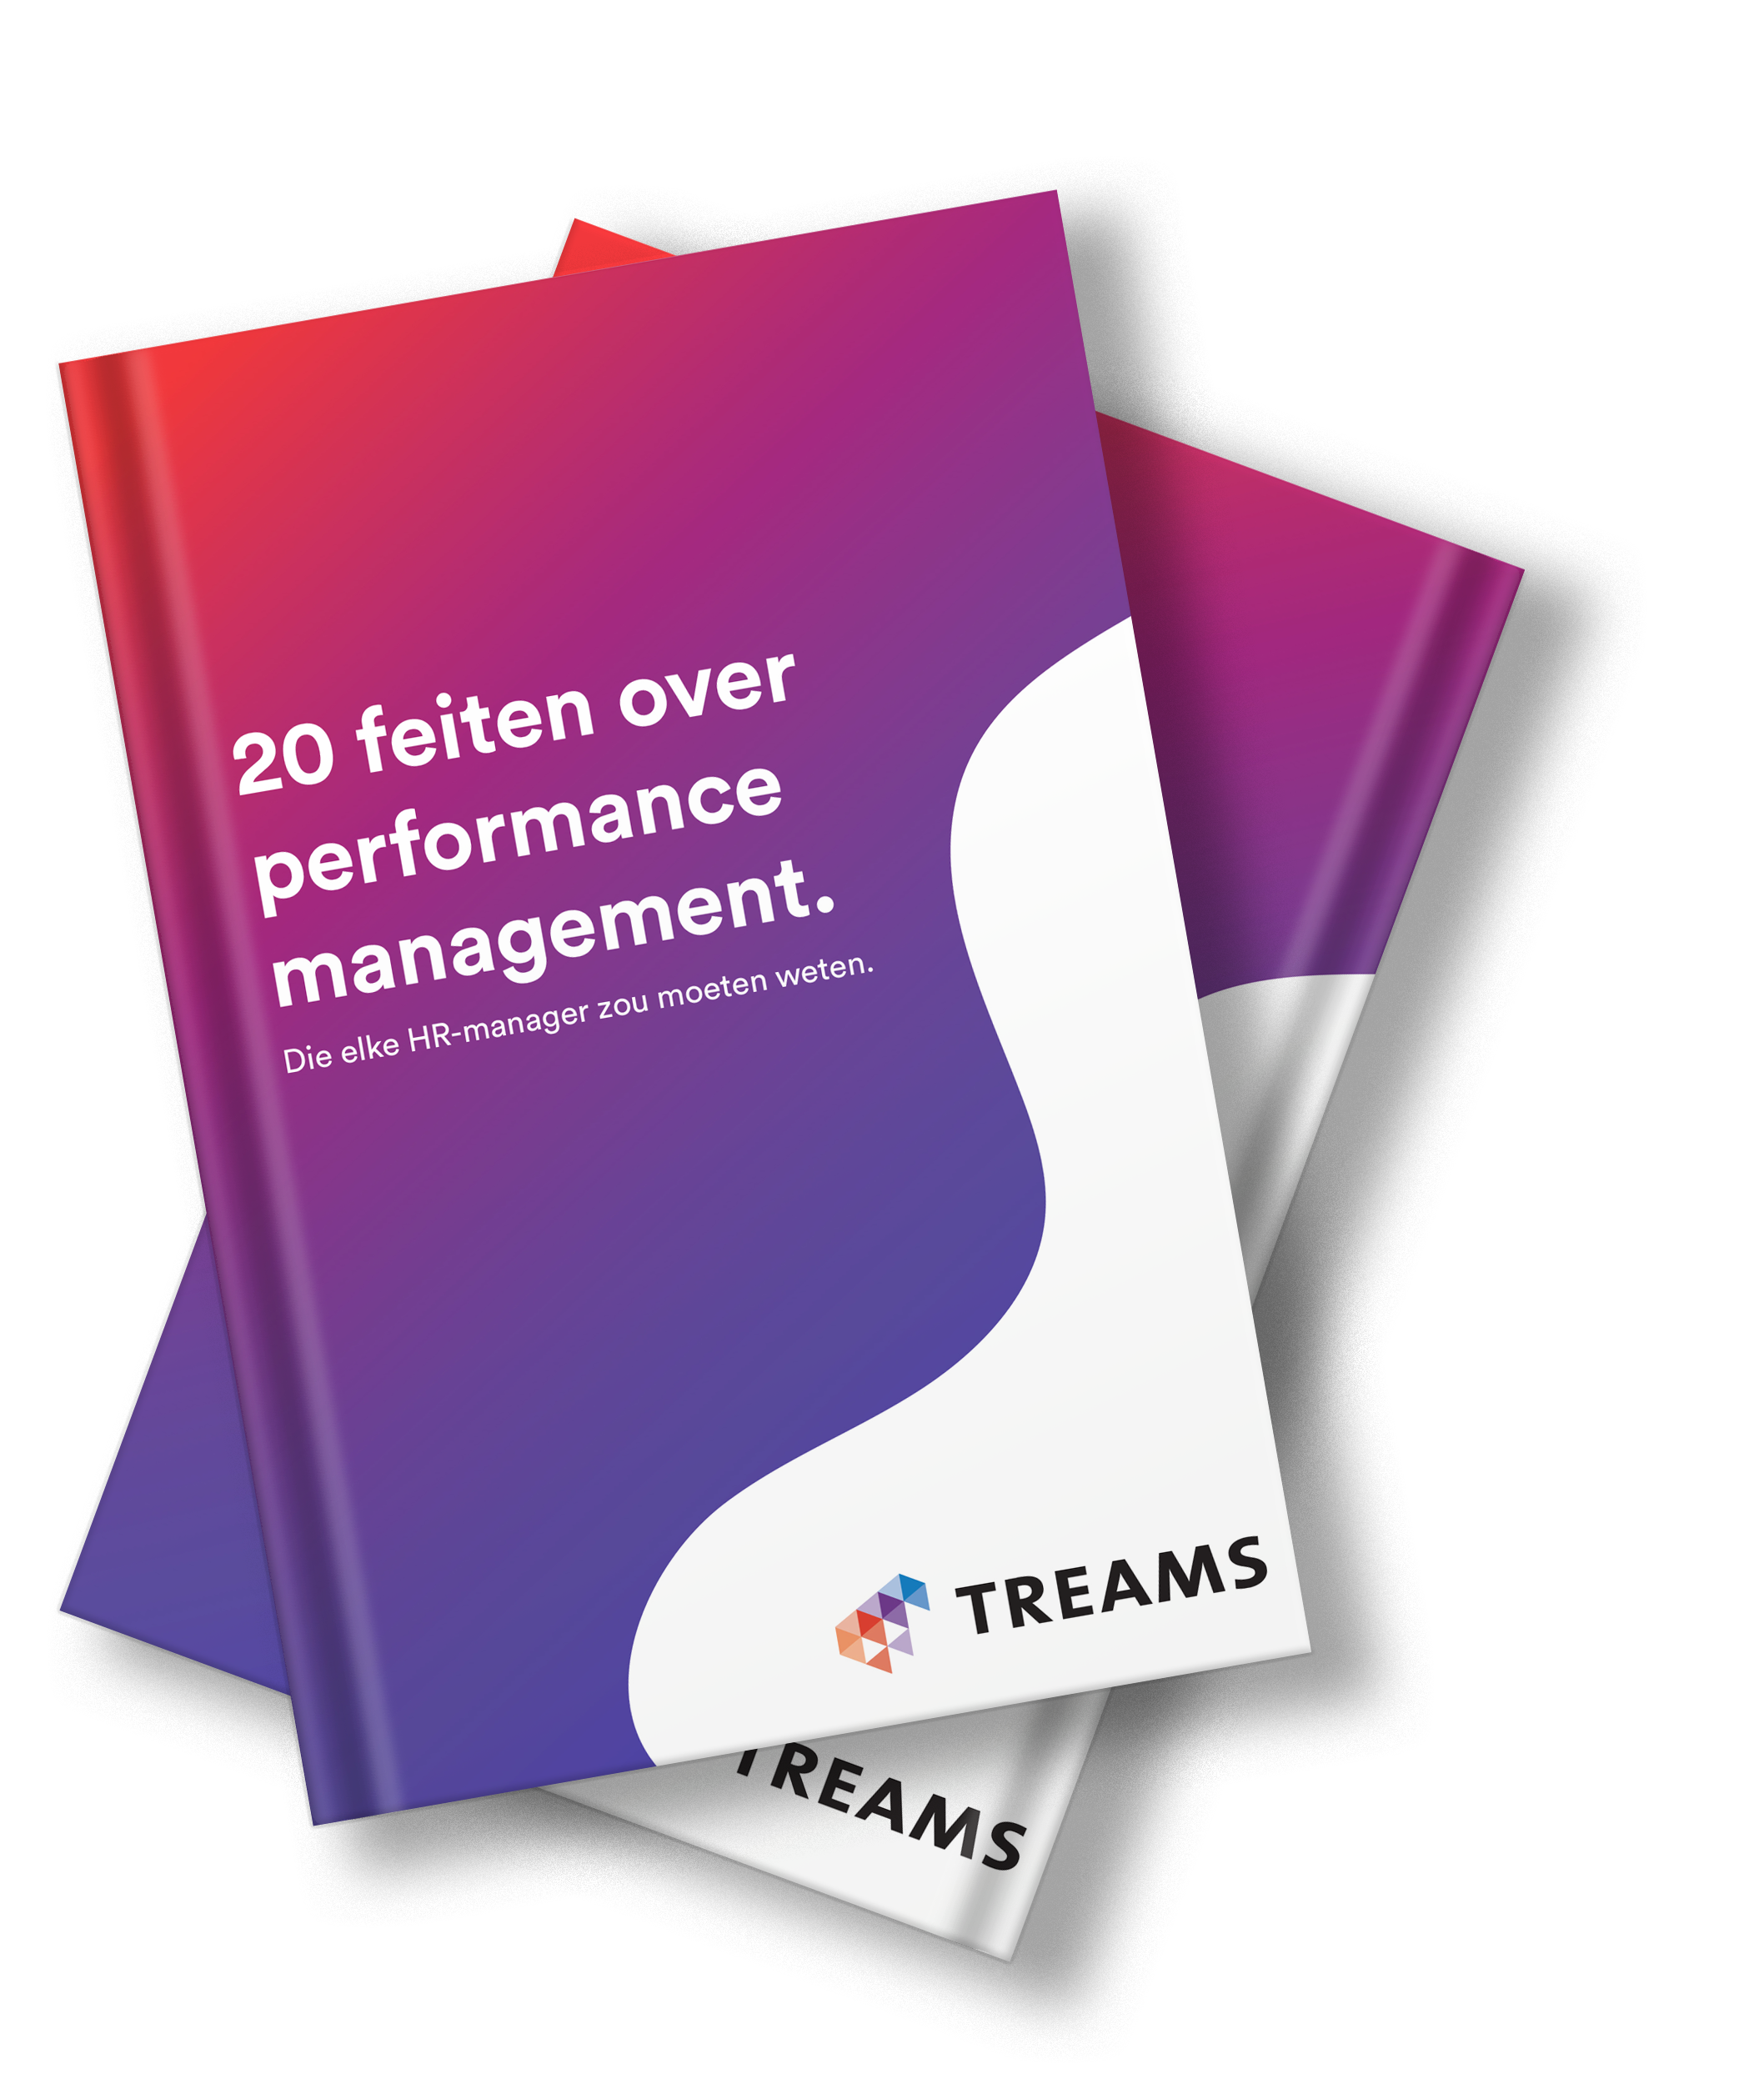 E-book performance management feiten3